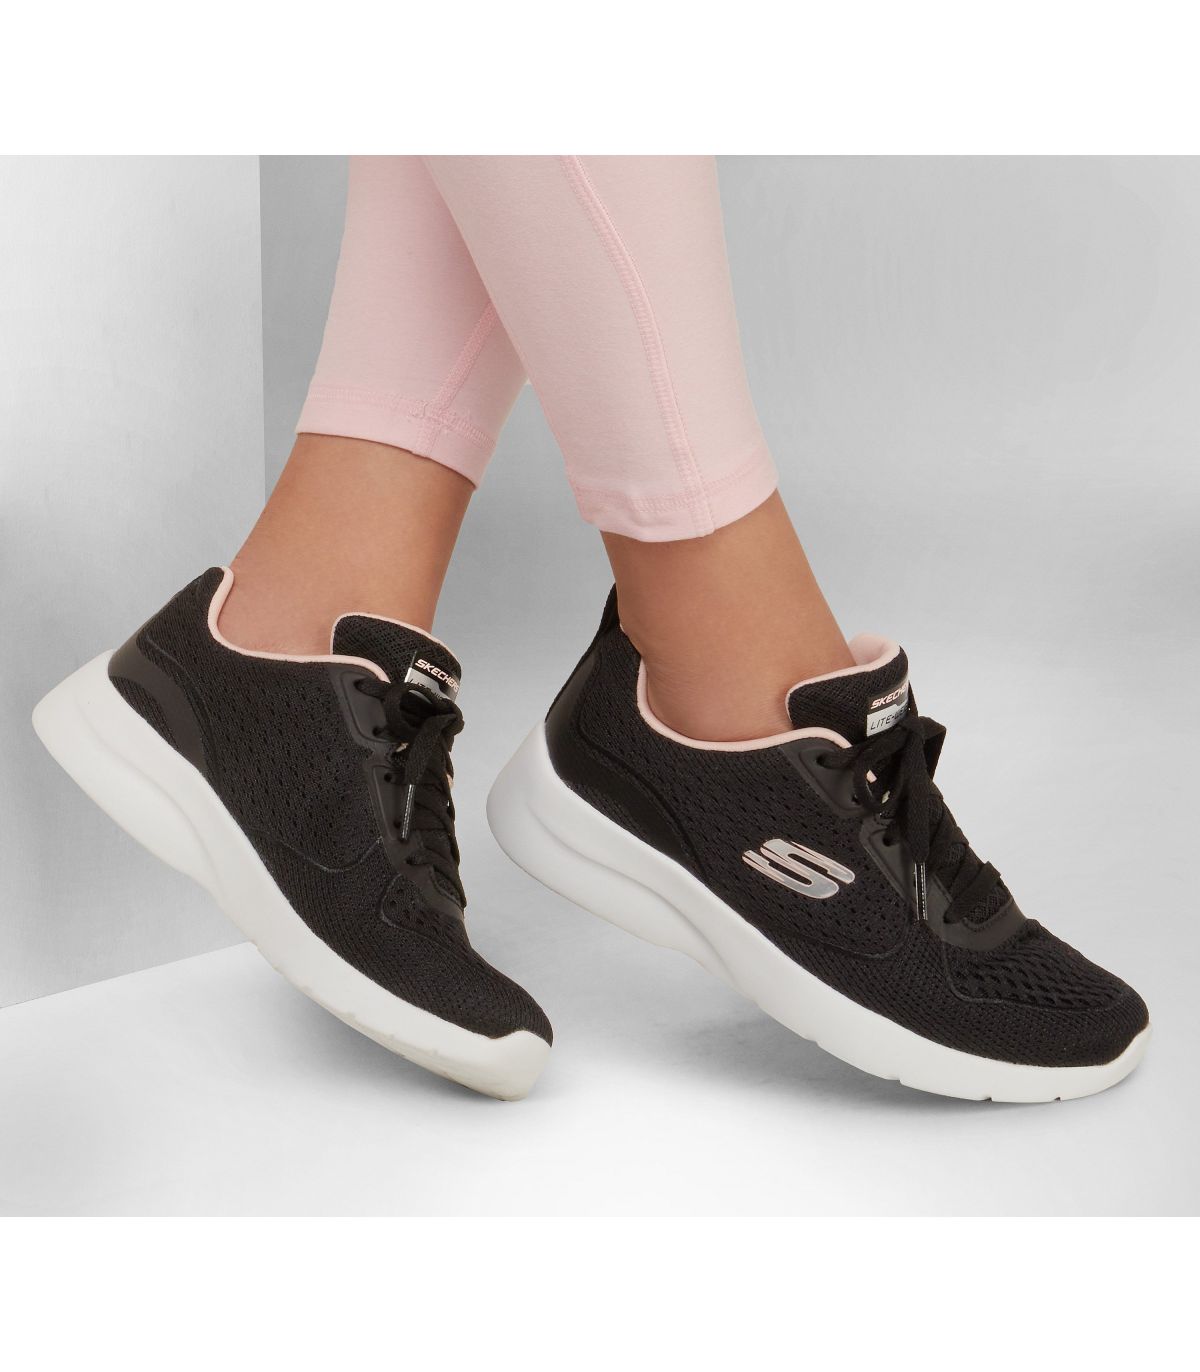 Zapatillas Skechers Dynamight 2.0 Mujer Black. Oferta y comprar